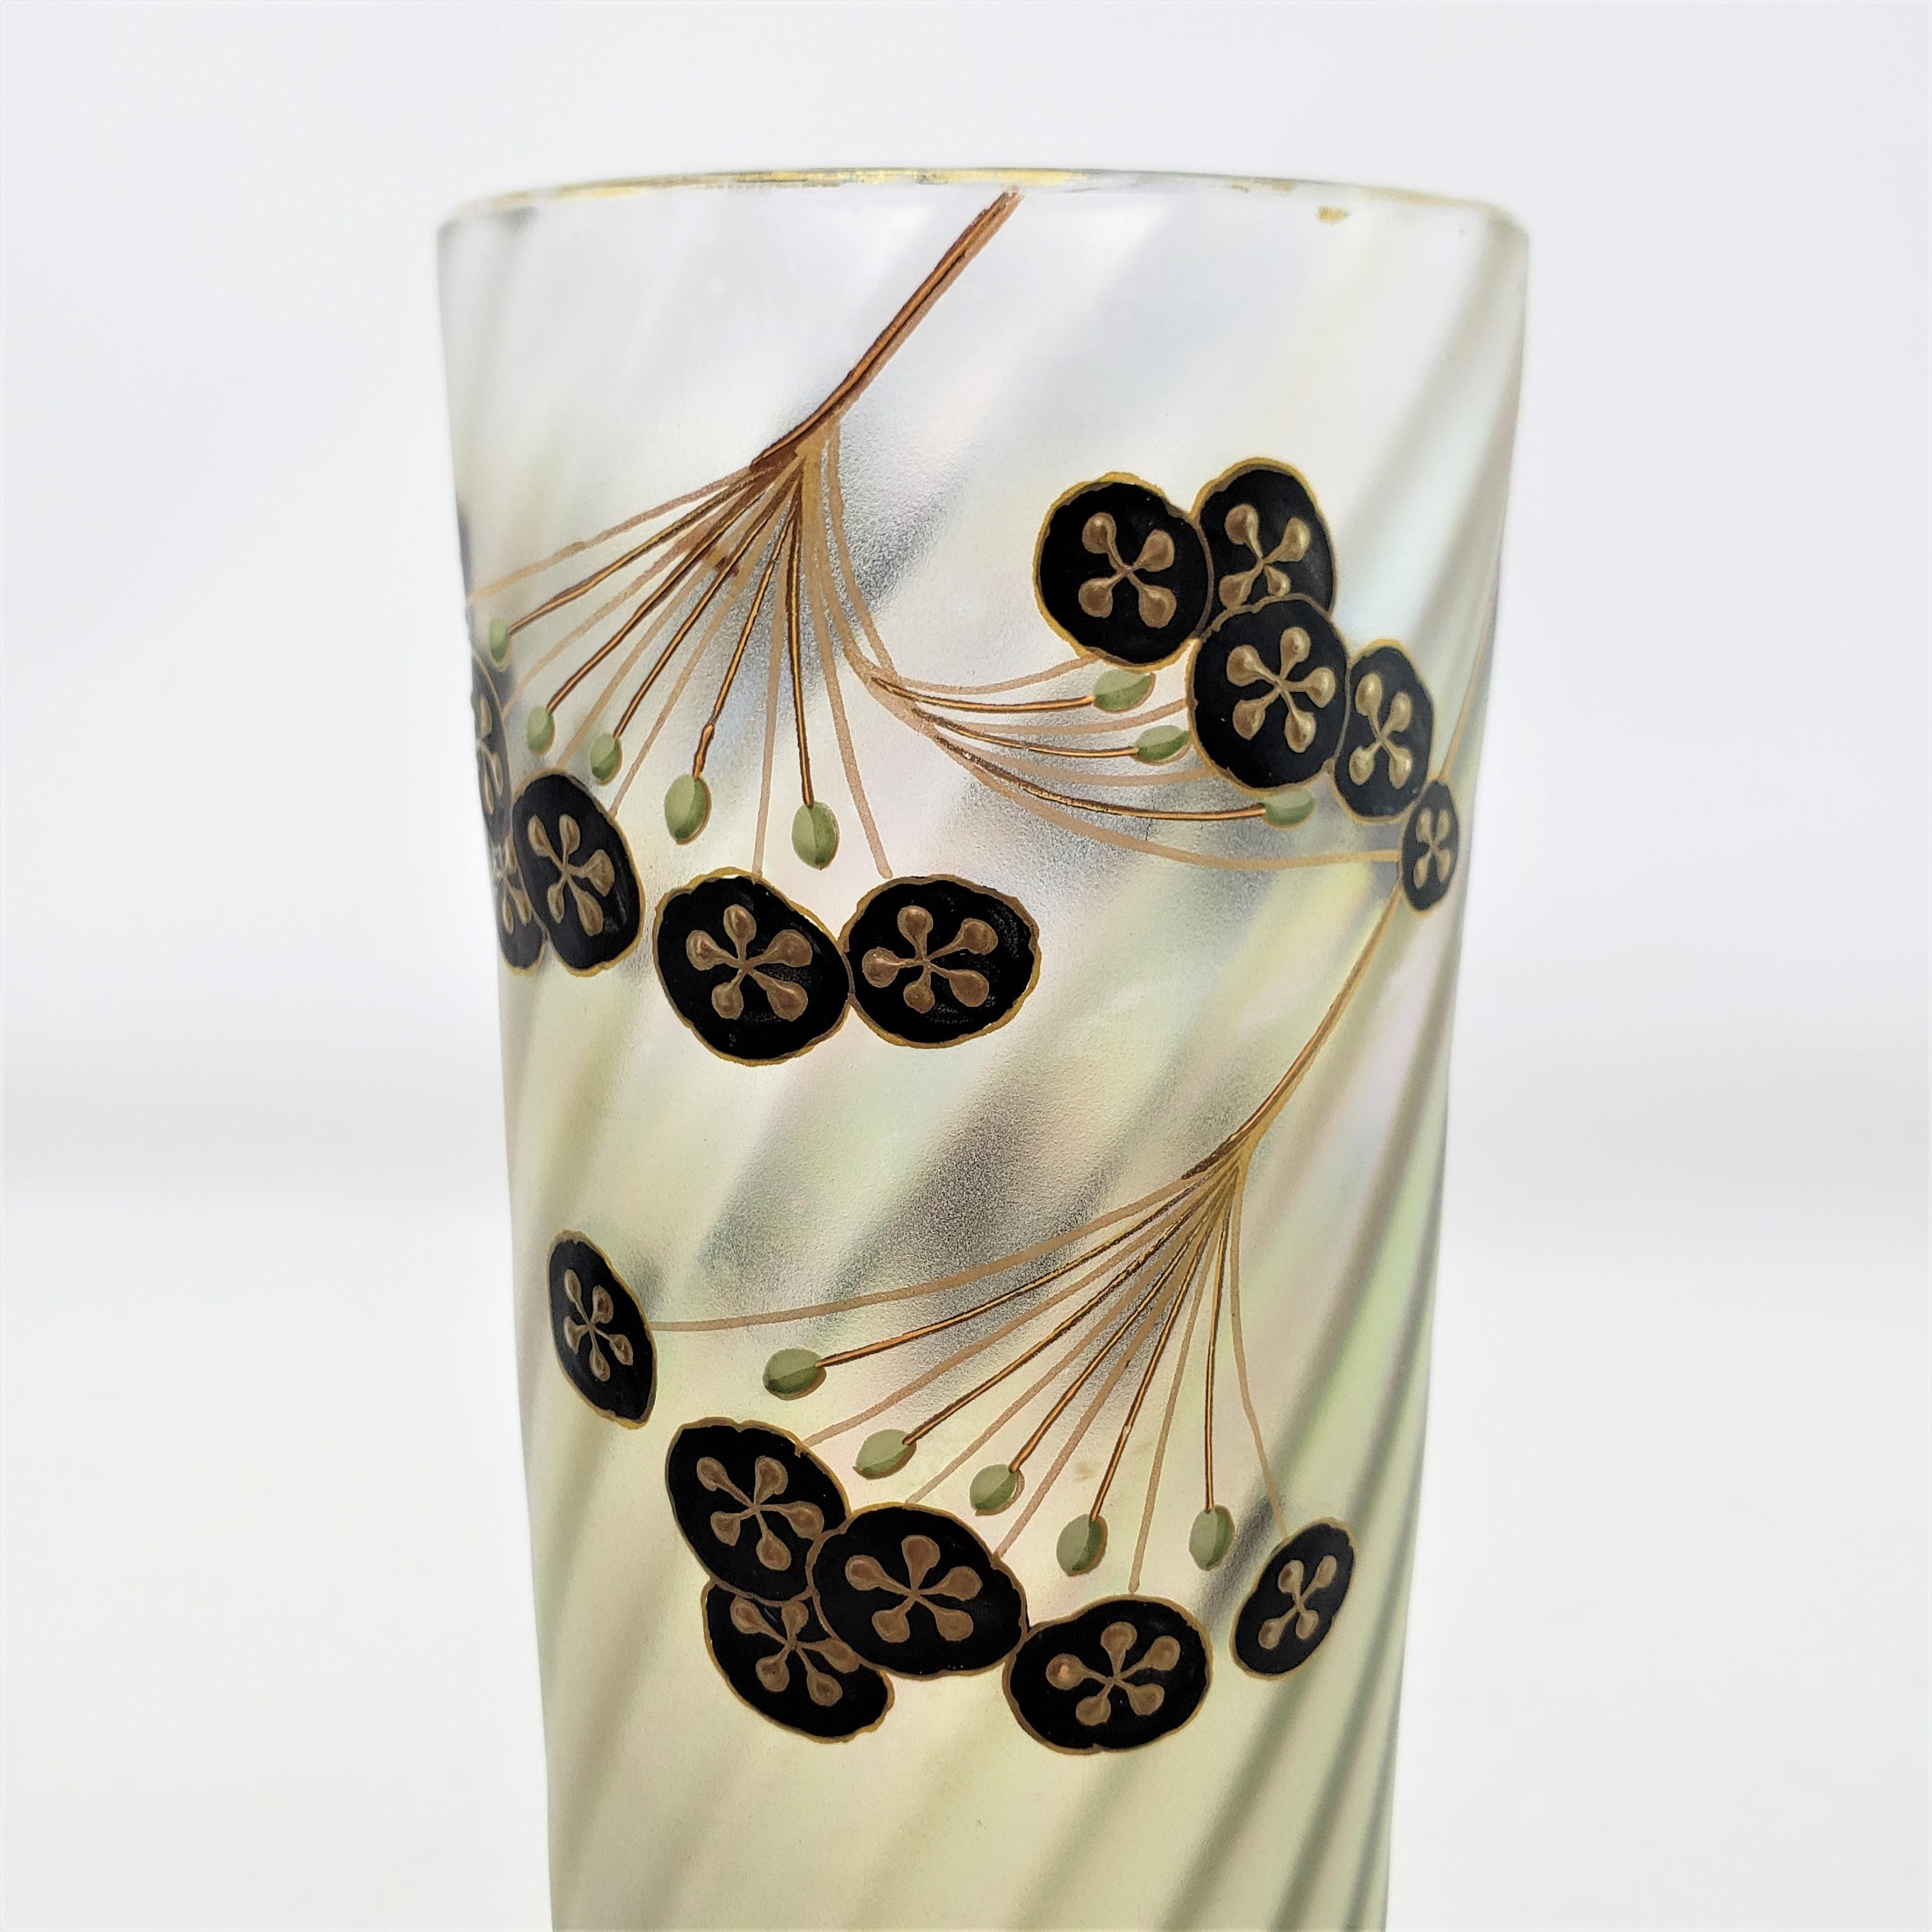 Antique Art Nouveau Iridescent Art Glass Vase with Enamel Floral Decoration For Sale 4